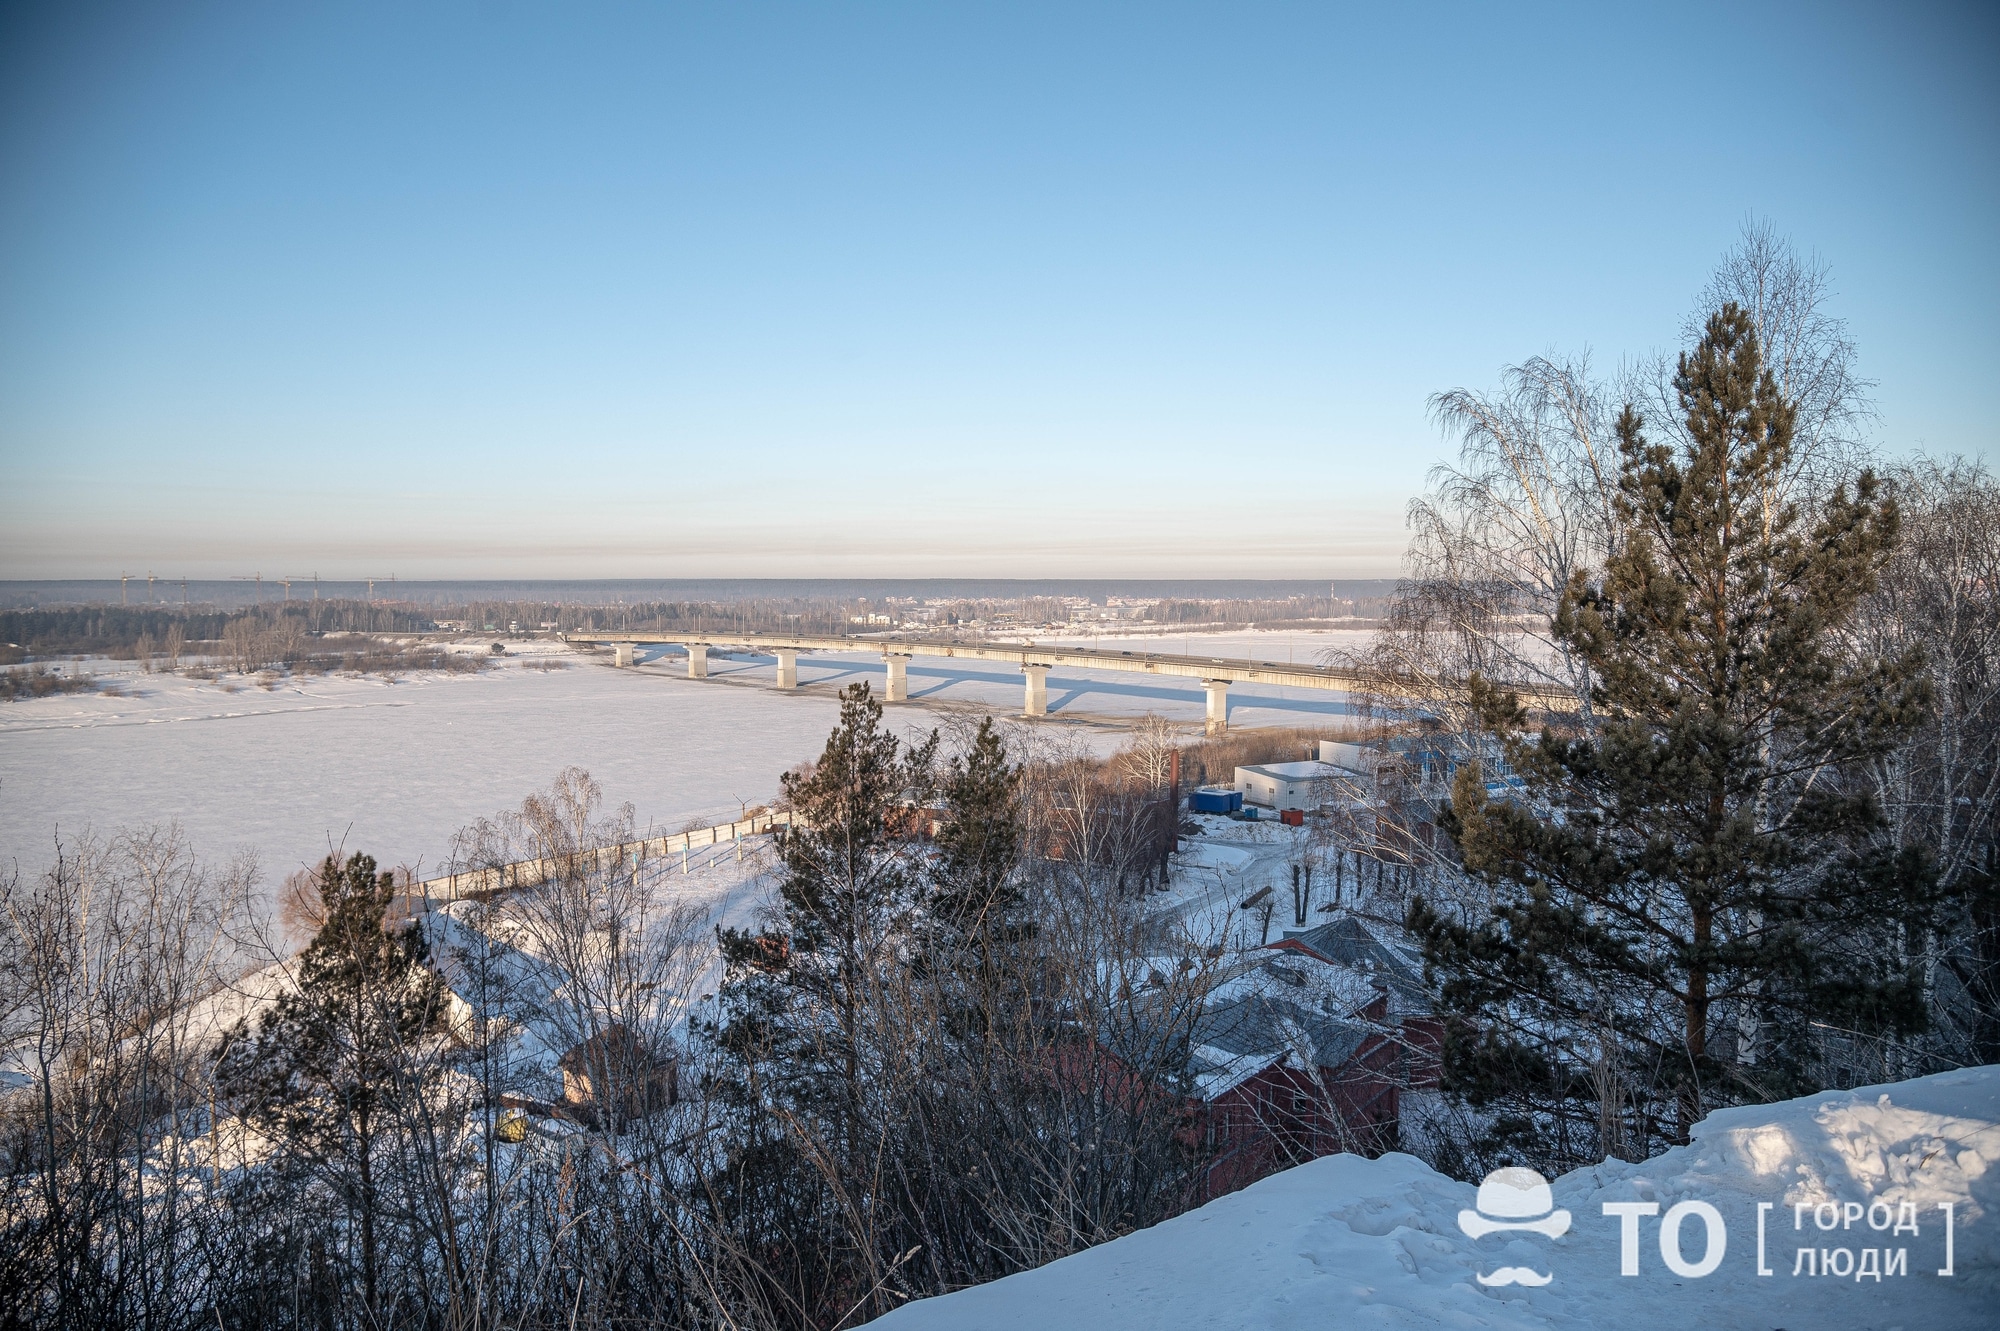 Томские новости, лагерный сад коммунальный мост строительство инфраструктура Иркутская компания отремонтирует Коммунальный мост в Томске за 1,2 млрд рублей